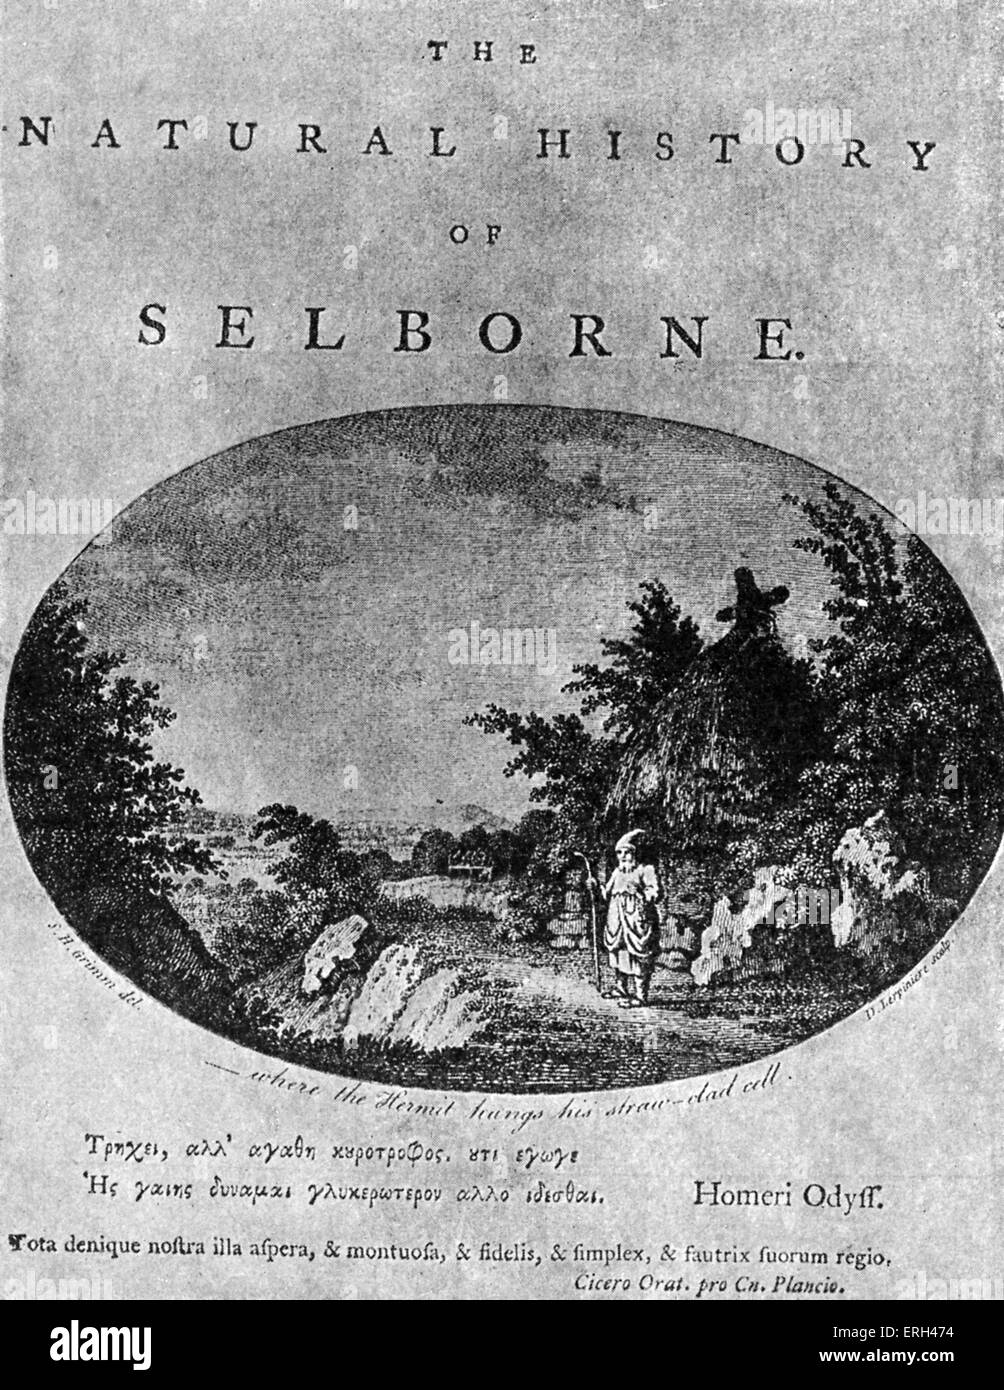 Gilbert Whites "Natural History of Selborne", nach dem Titelblatt der Erstausgabe. GW, bahnbrechende Naturforscher und Stockfoto